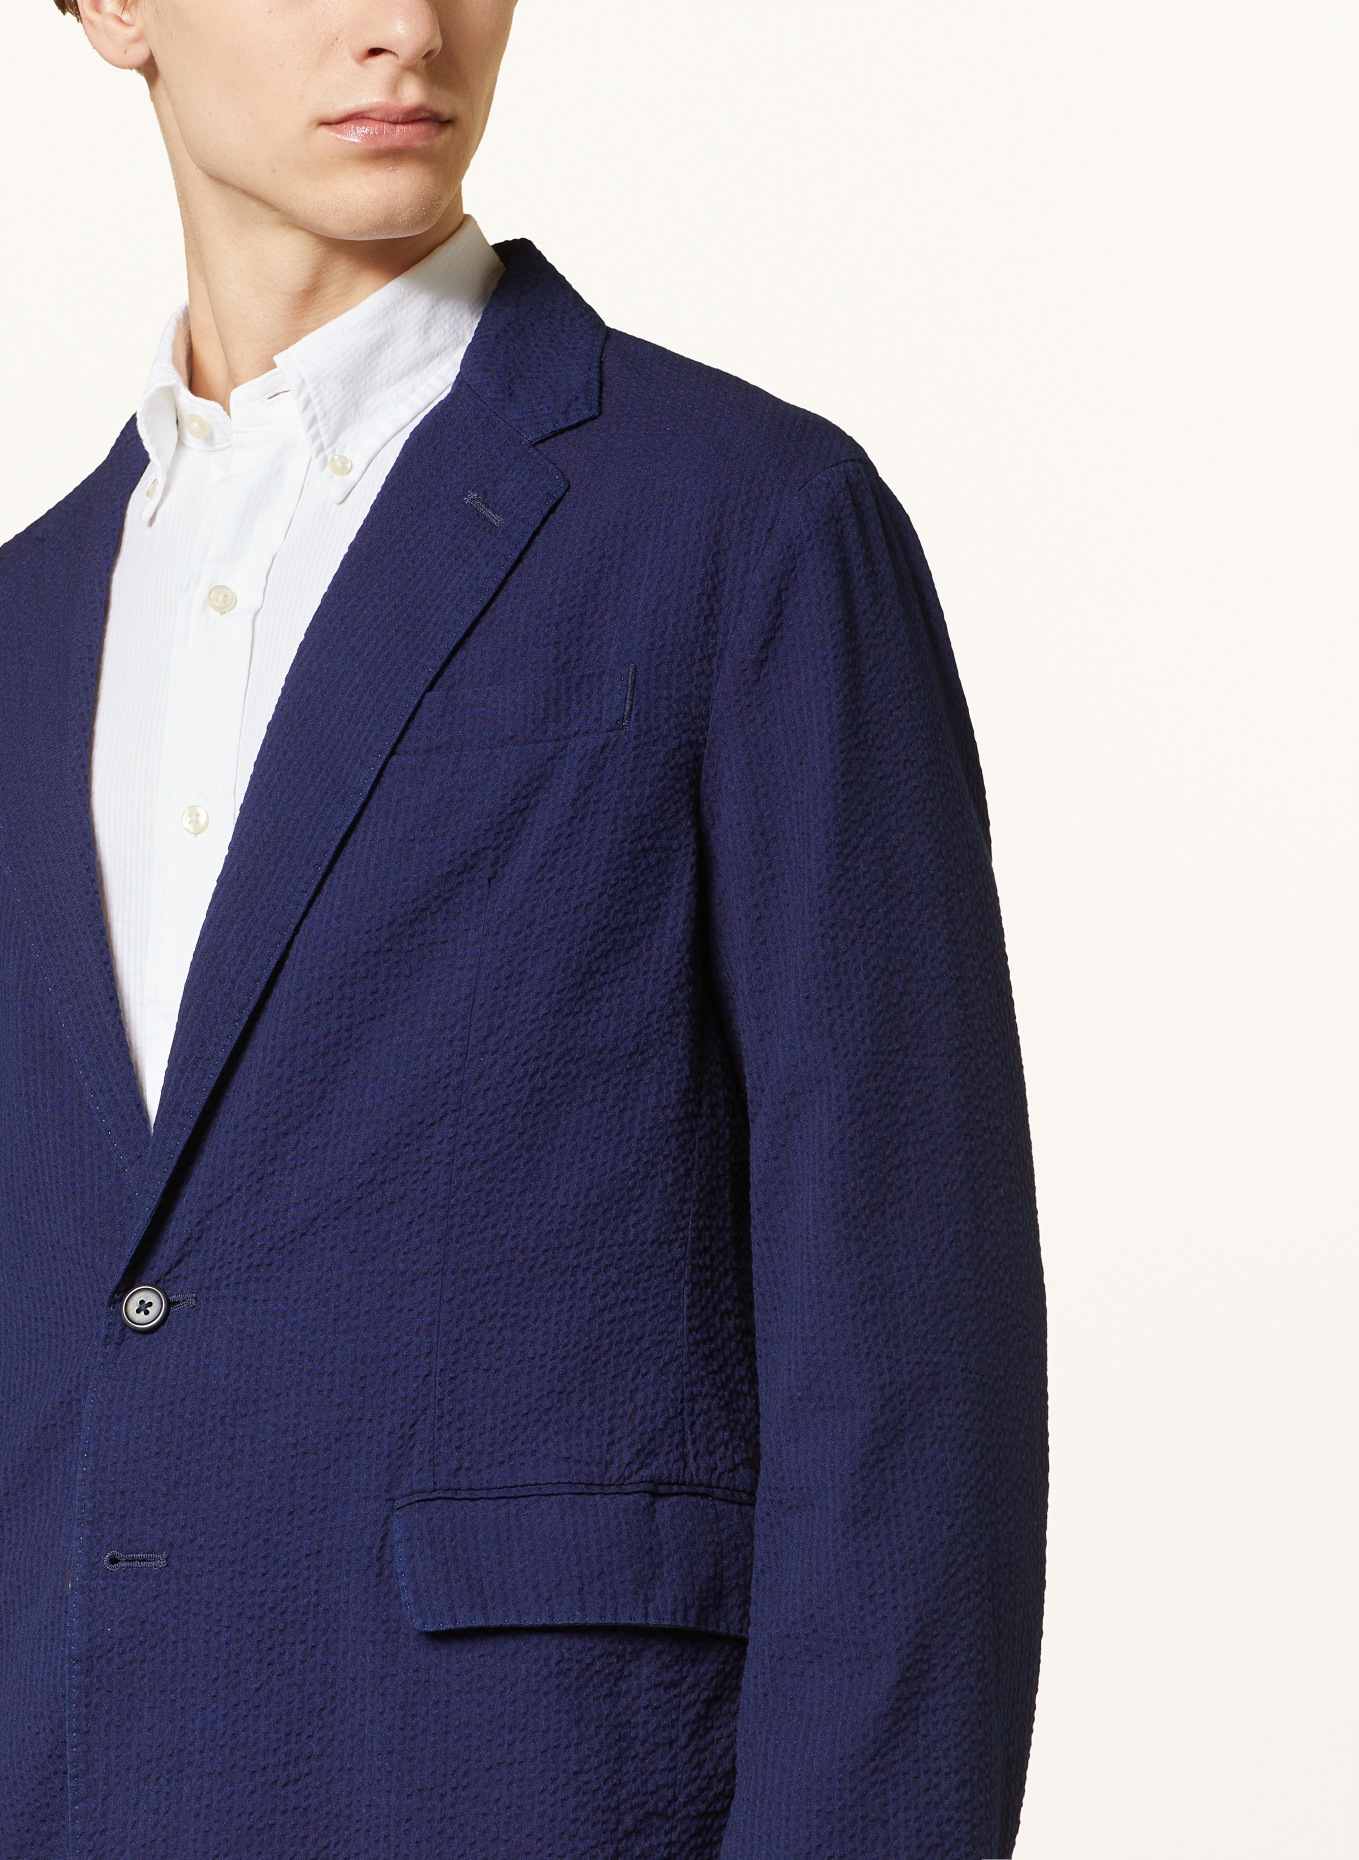 POLO RALPH LAUREN Suit jacket modern fit, Color: 001 BRIGHT BLUE/WHITE (Image 5)